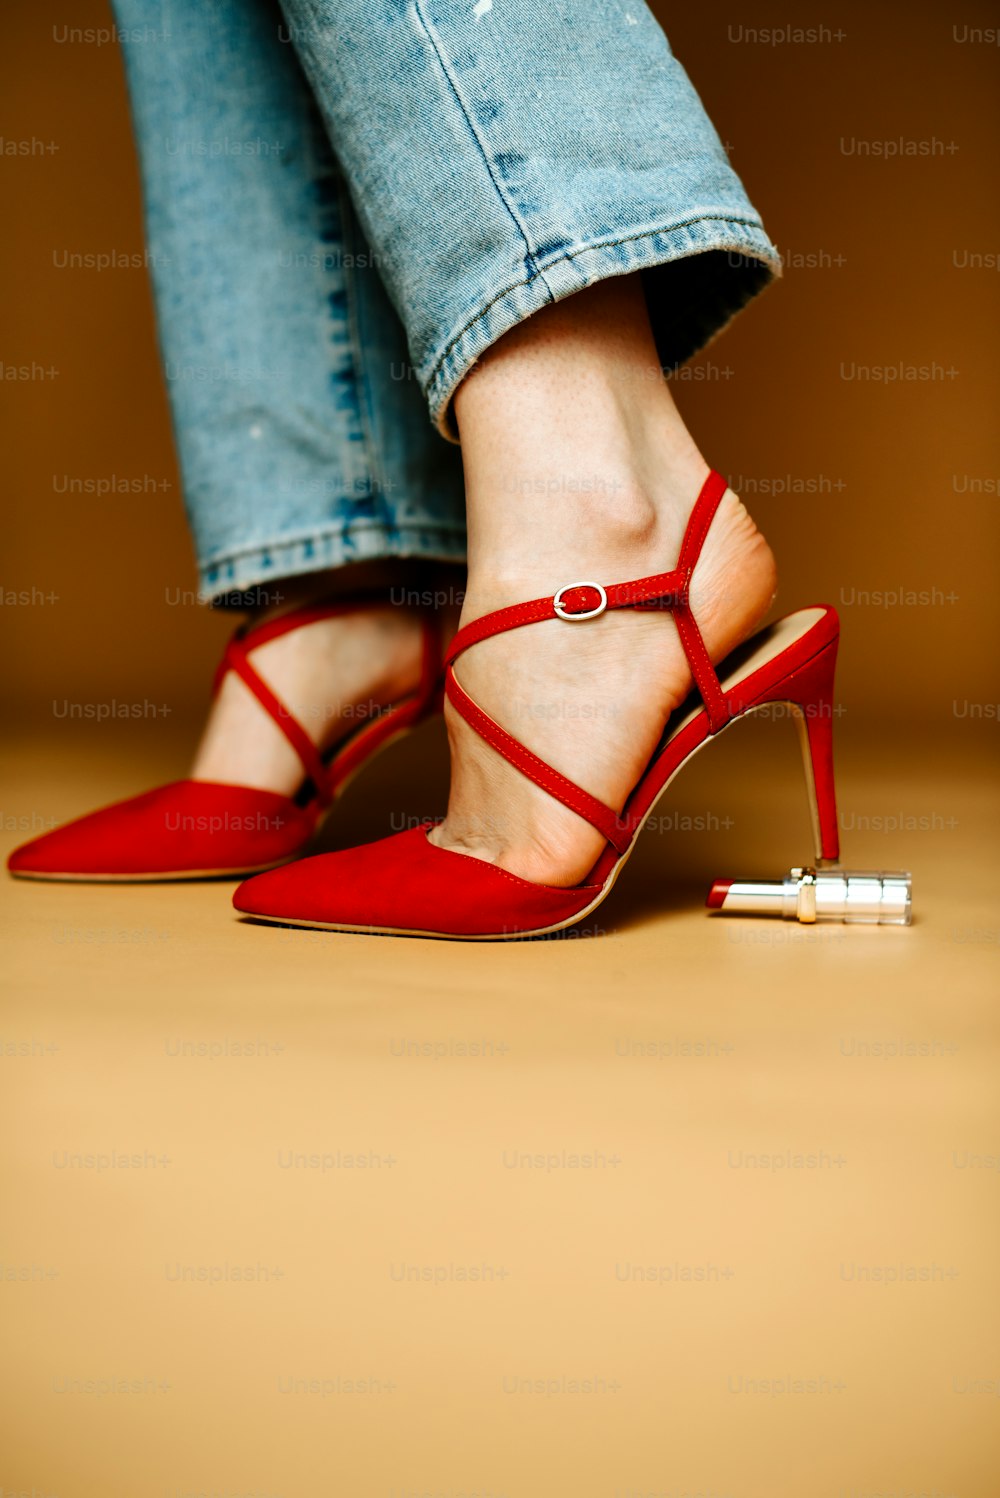 Eine Frau in roten High Heels steht auf einem Holzboden